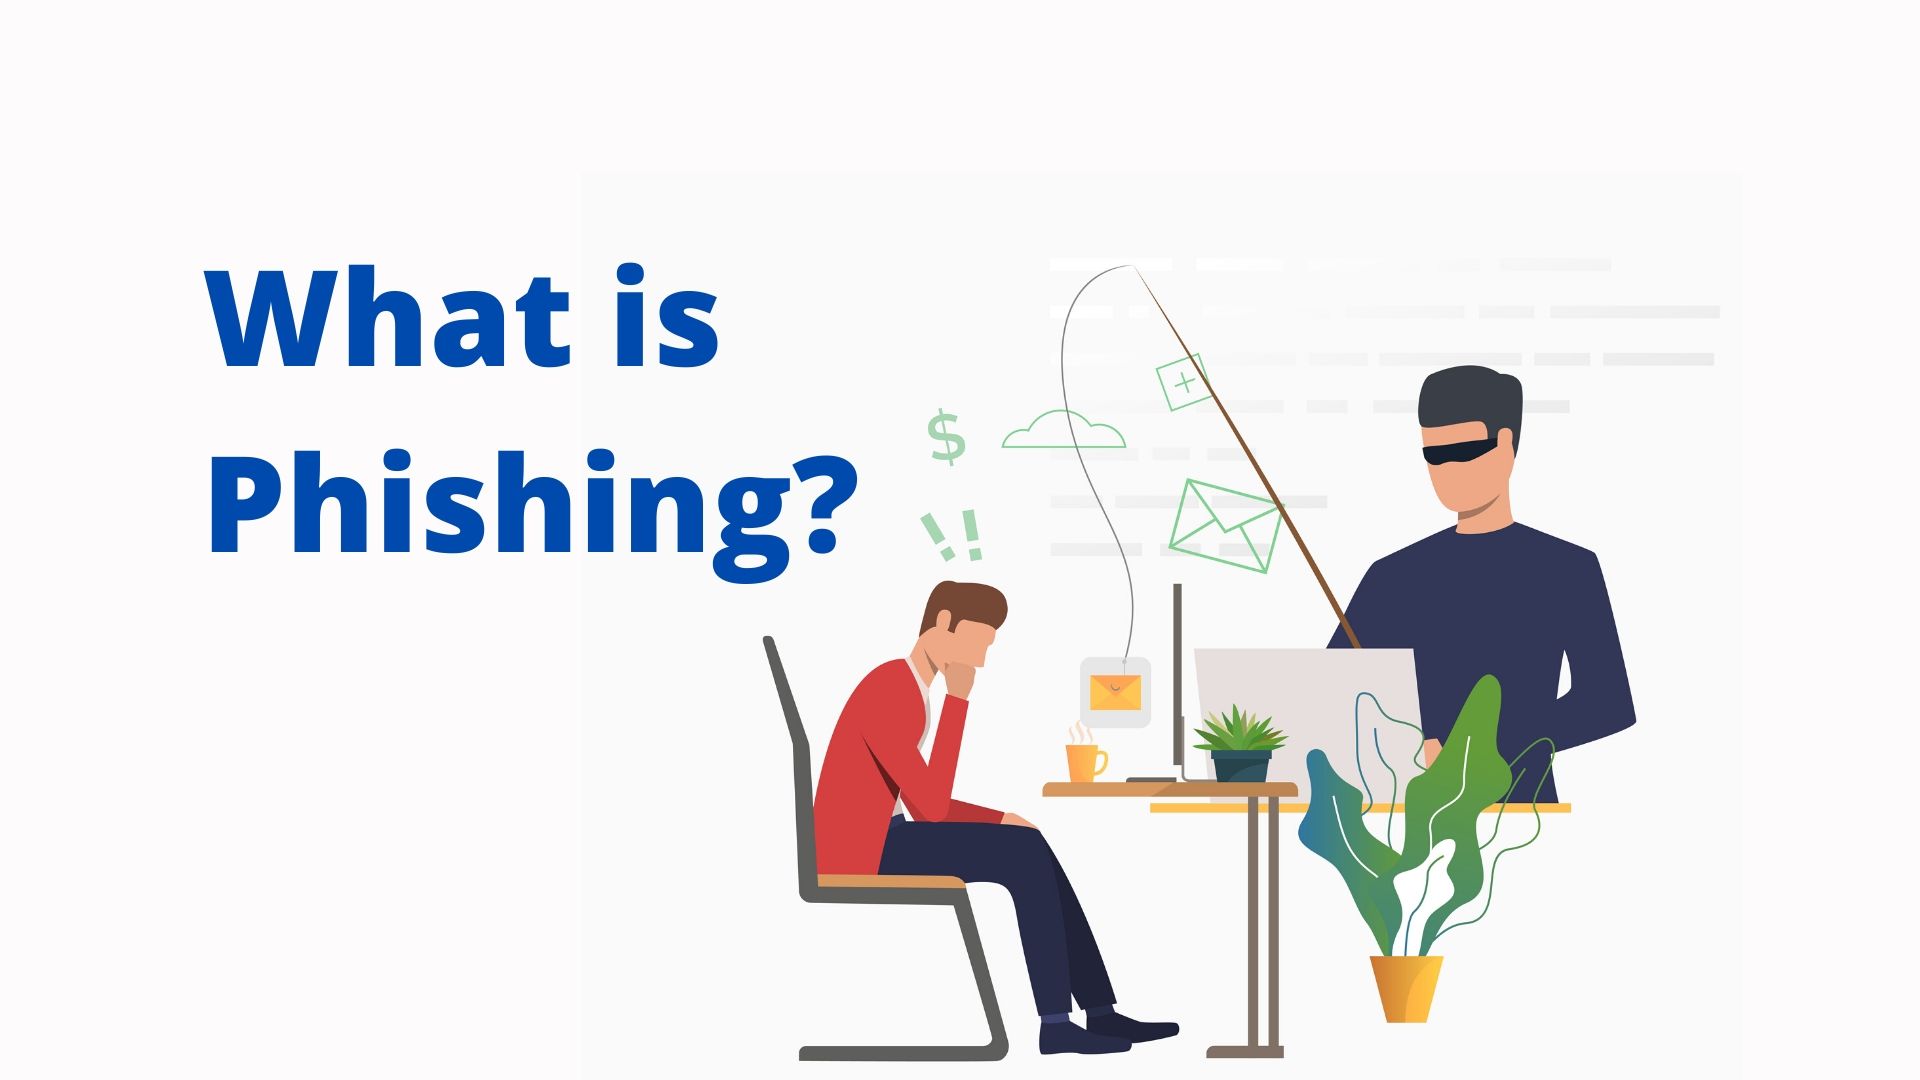 فیشینگ (Phishing) چیست؟ و چه راه هایی برای مقابله با آن وجود دارد؟